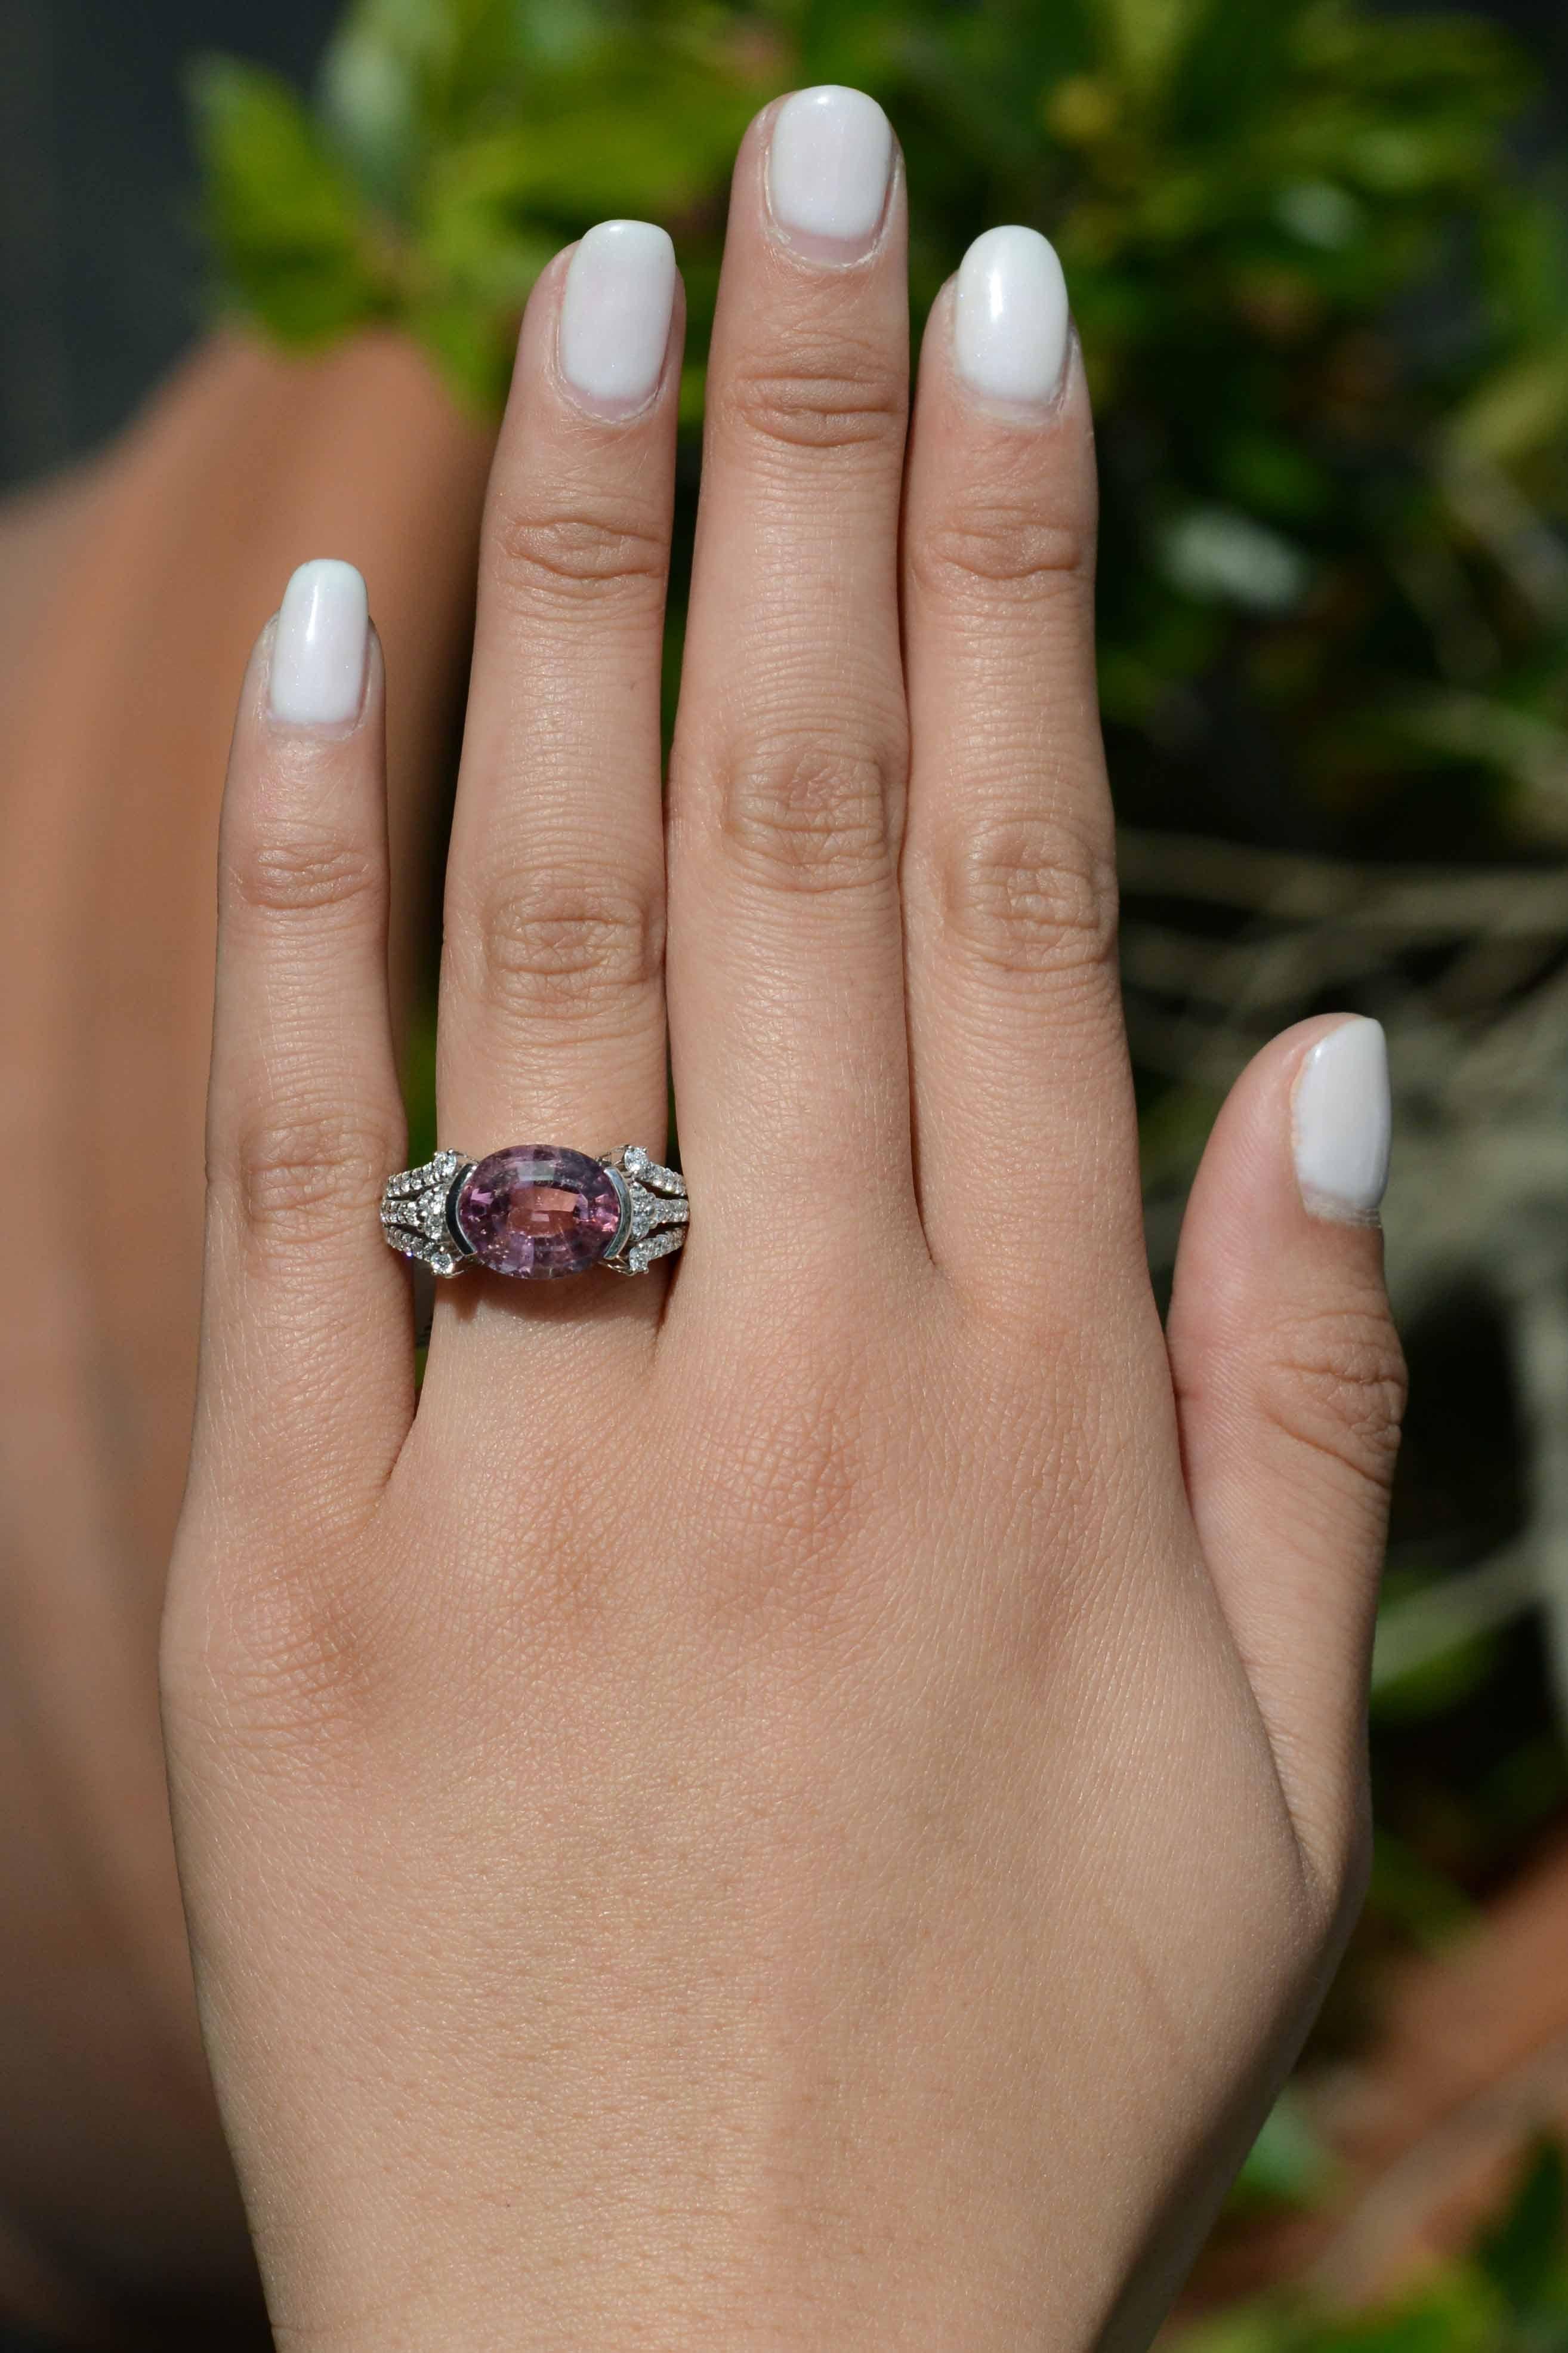 Dieser Ring im Stil zwischen Ost und West ist mit einem atemberaubenden 7-karätigen rosa Turmalin und 38 Diamanten im Rundschliff besetzt. Der Turmalin hat eine rosafarbene Farbe mit orangefarbenen Reflexen. Die Reihen der eingefassten Diamanten